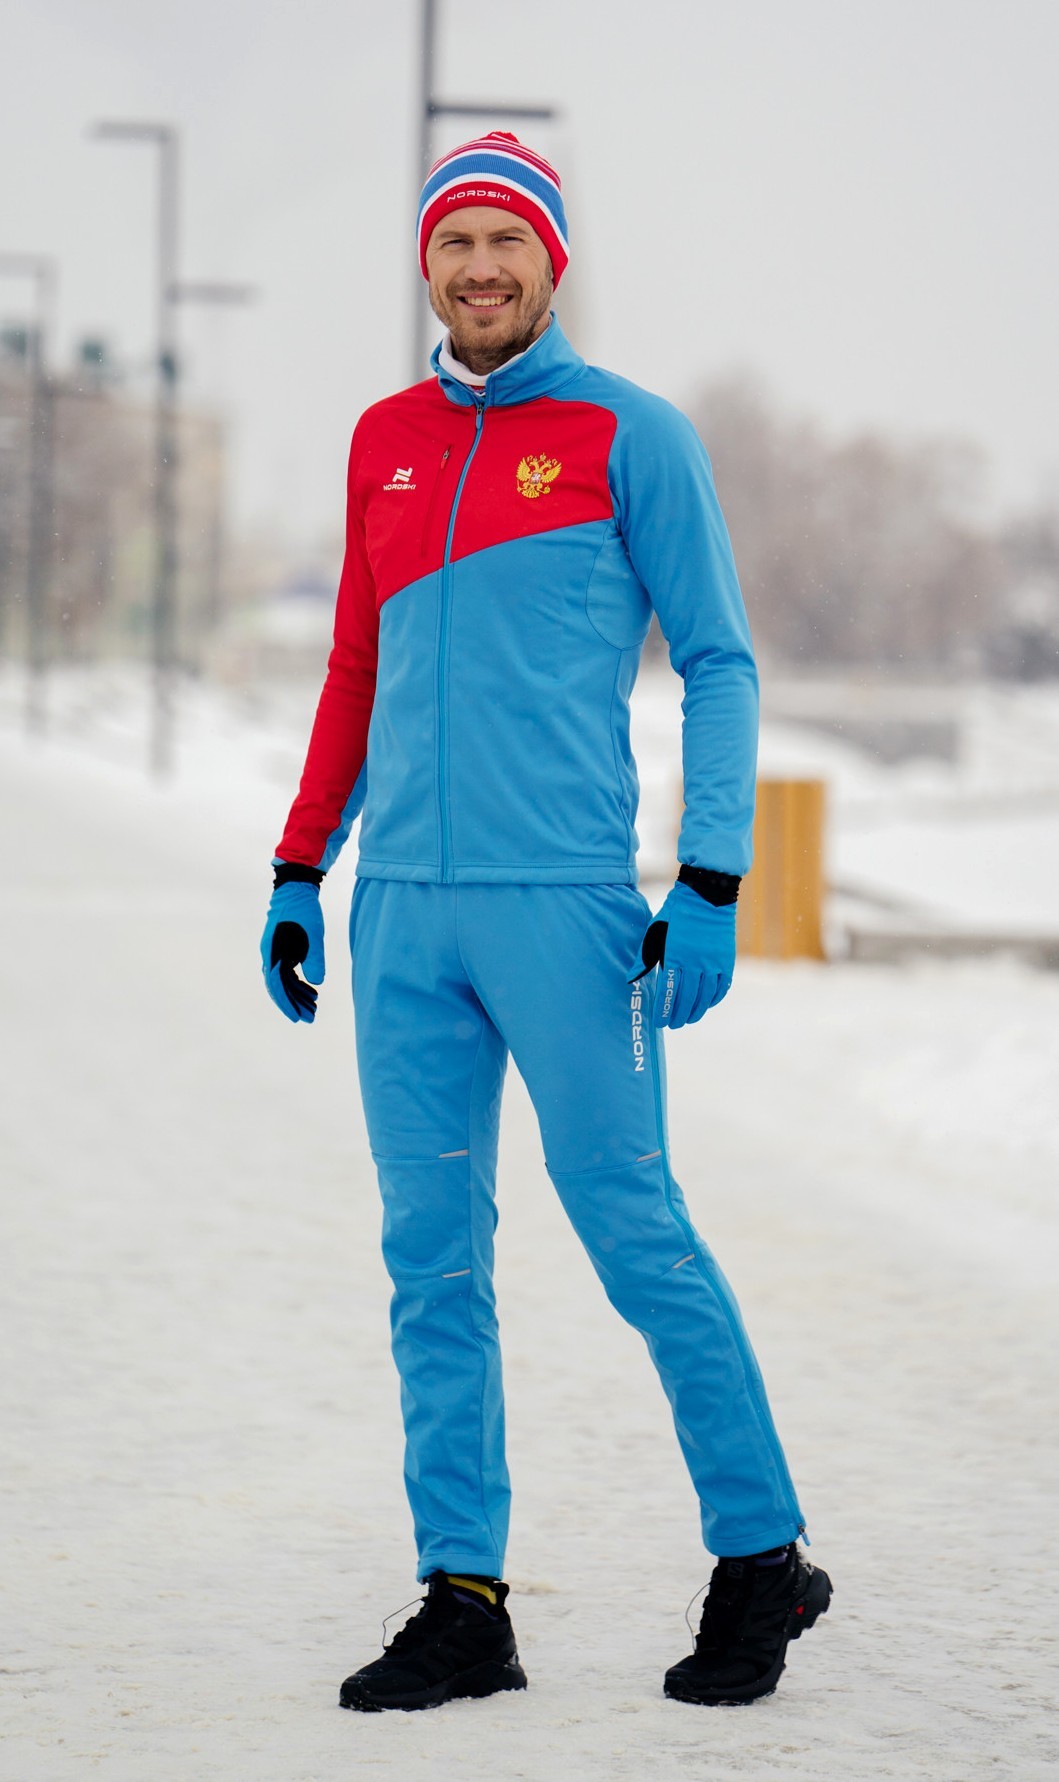 ��теплённый лыжный костюм Nordski Premium голубой-красный мужской NSM443879-NSM305700 купить со скидкой в Москве